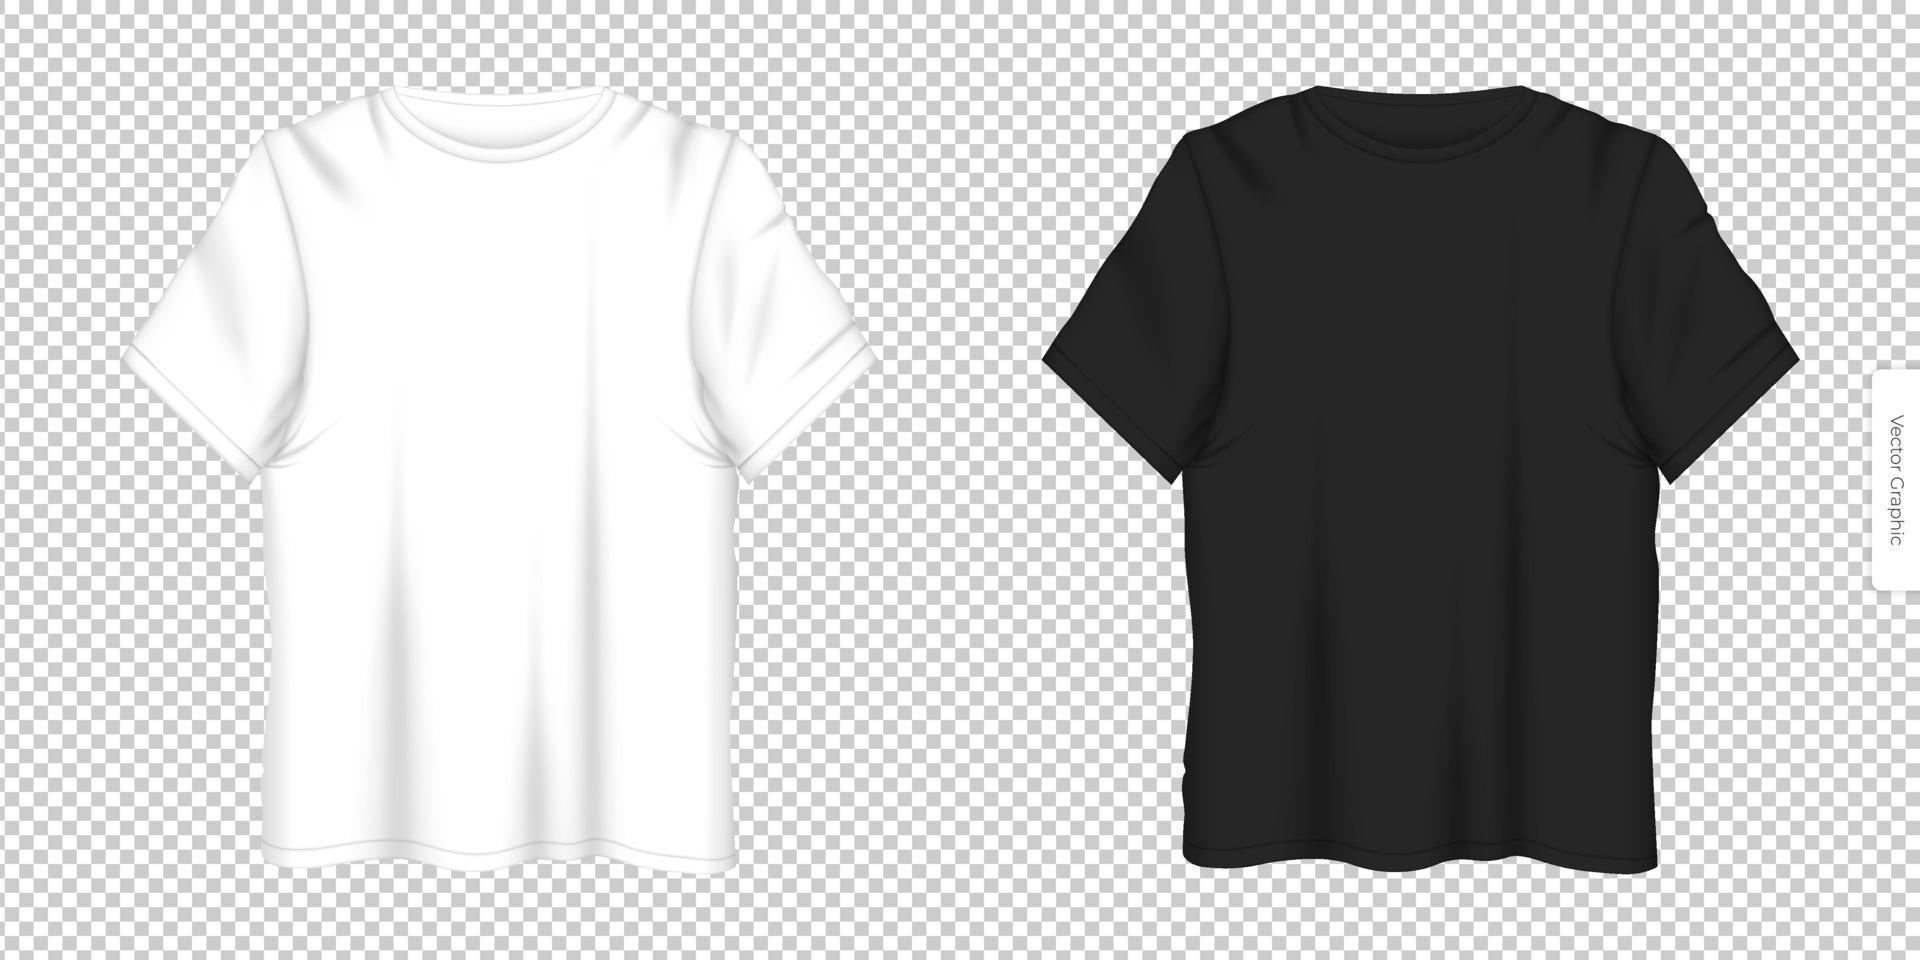 realistisk vektor illustration esp 10 t-shirt layout, vektor uppsättning av vit och svart t-shirt layouter med främre se universell lösning för reklam mode Kläder för män och kvinnor